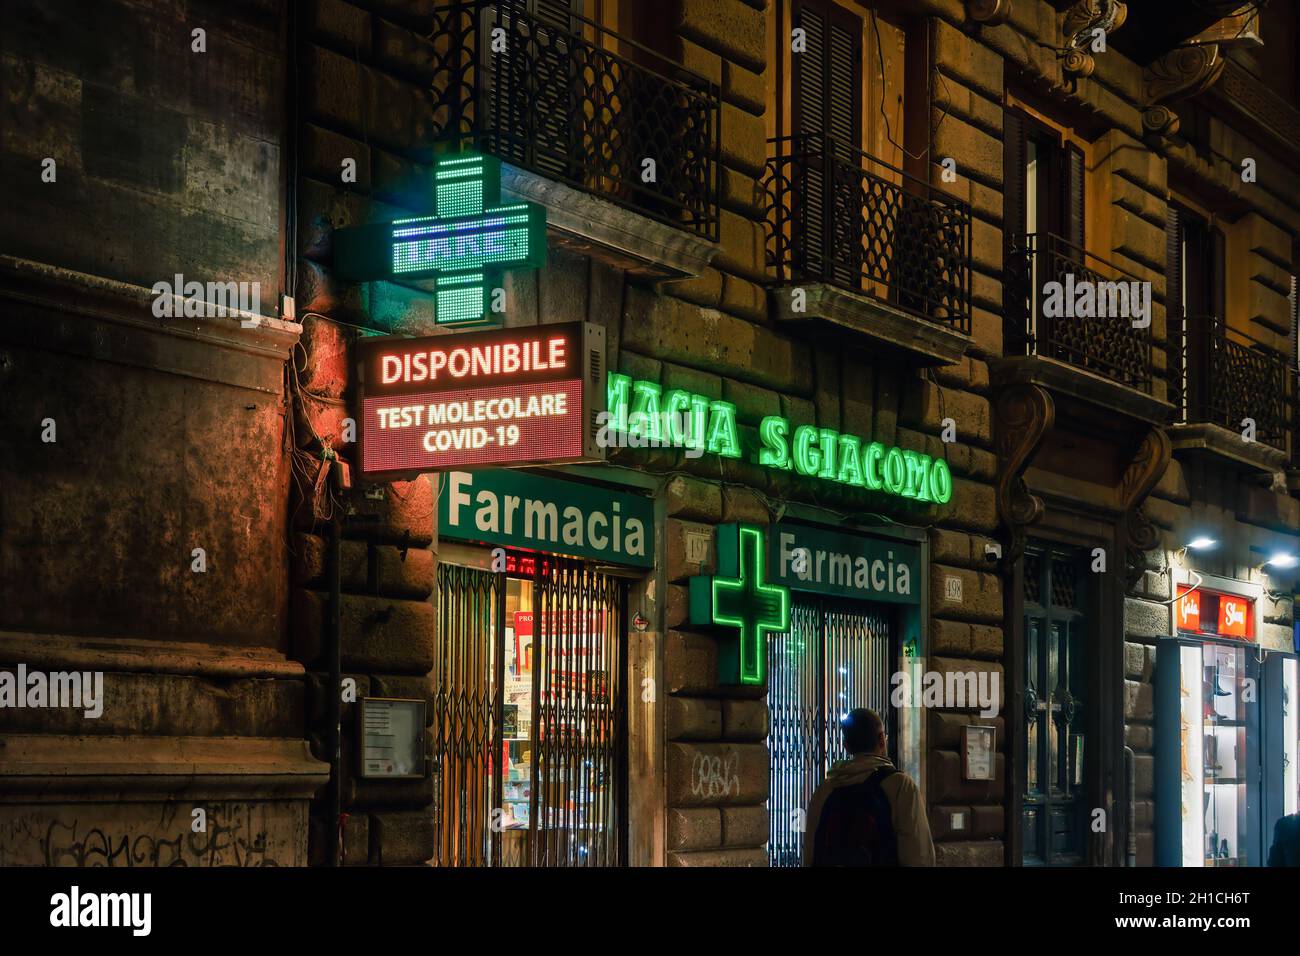 Rom, Italien Öffnen Sie den Eingang des Apotheken-Geschäfts mit dem Covid-19-Molekulartestschild. Außenansicht des italienischen Pharmazeutikladens mit beleuchtetem grünen Display und Schaufenster. Stockfoto